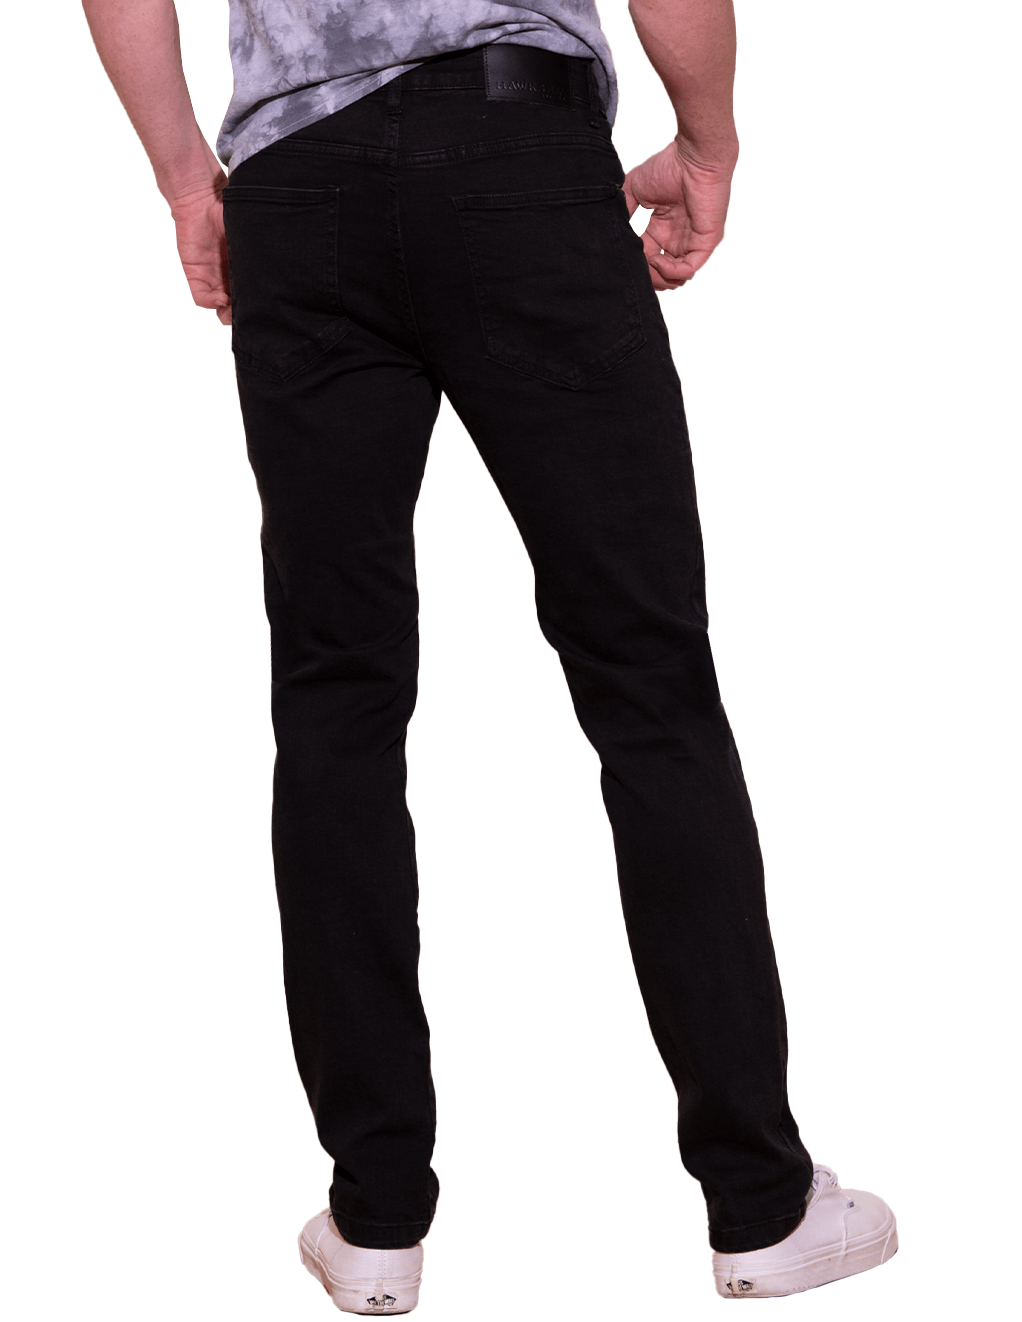 HUSTLER® Mens Jeans - Black - Full Length Back